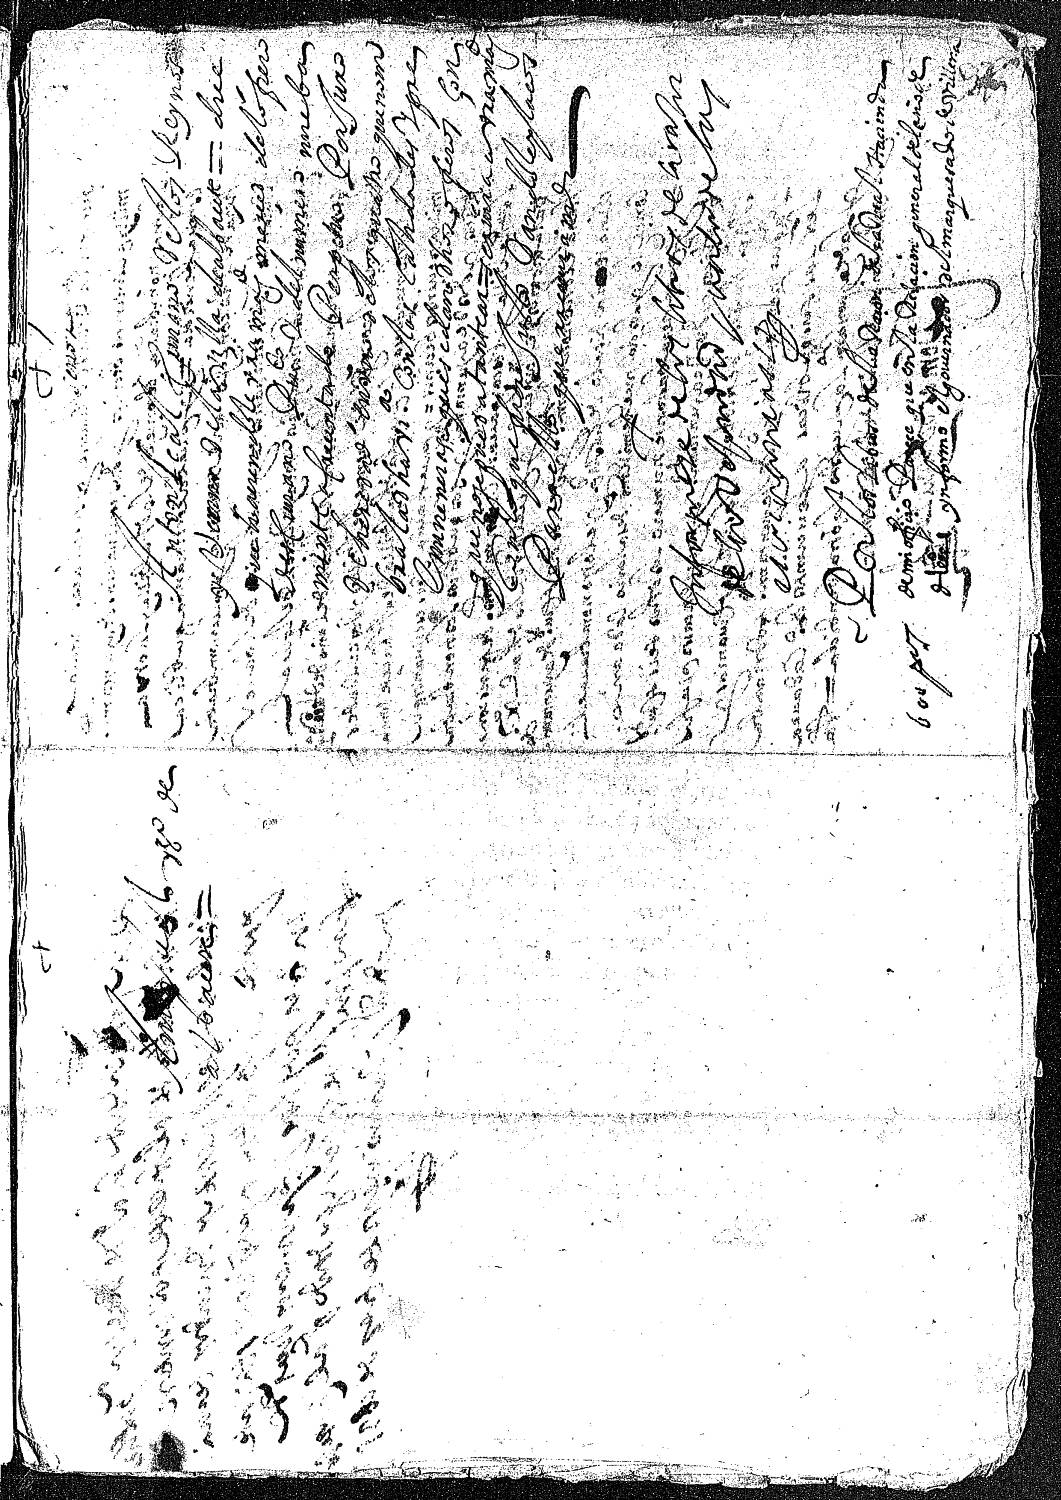 Petición de Antón Leal solicitando al rey le venda un oficio de escribano público de la villa de Albacete.